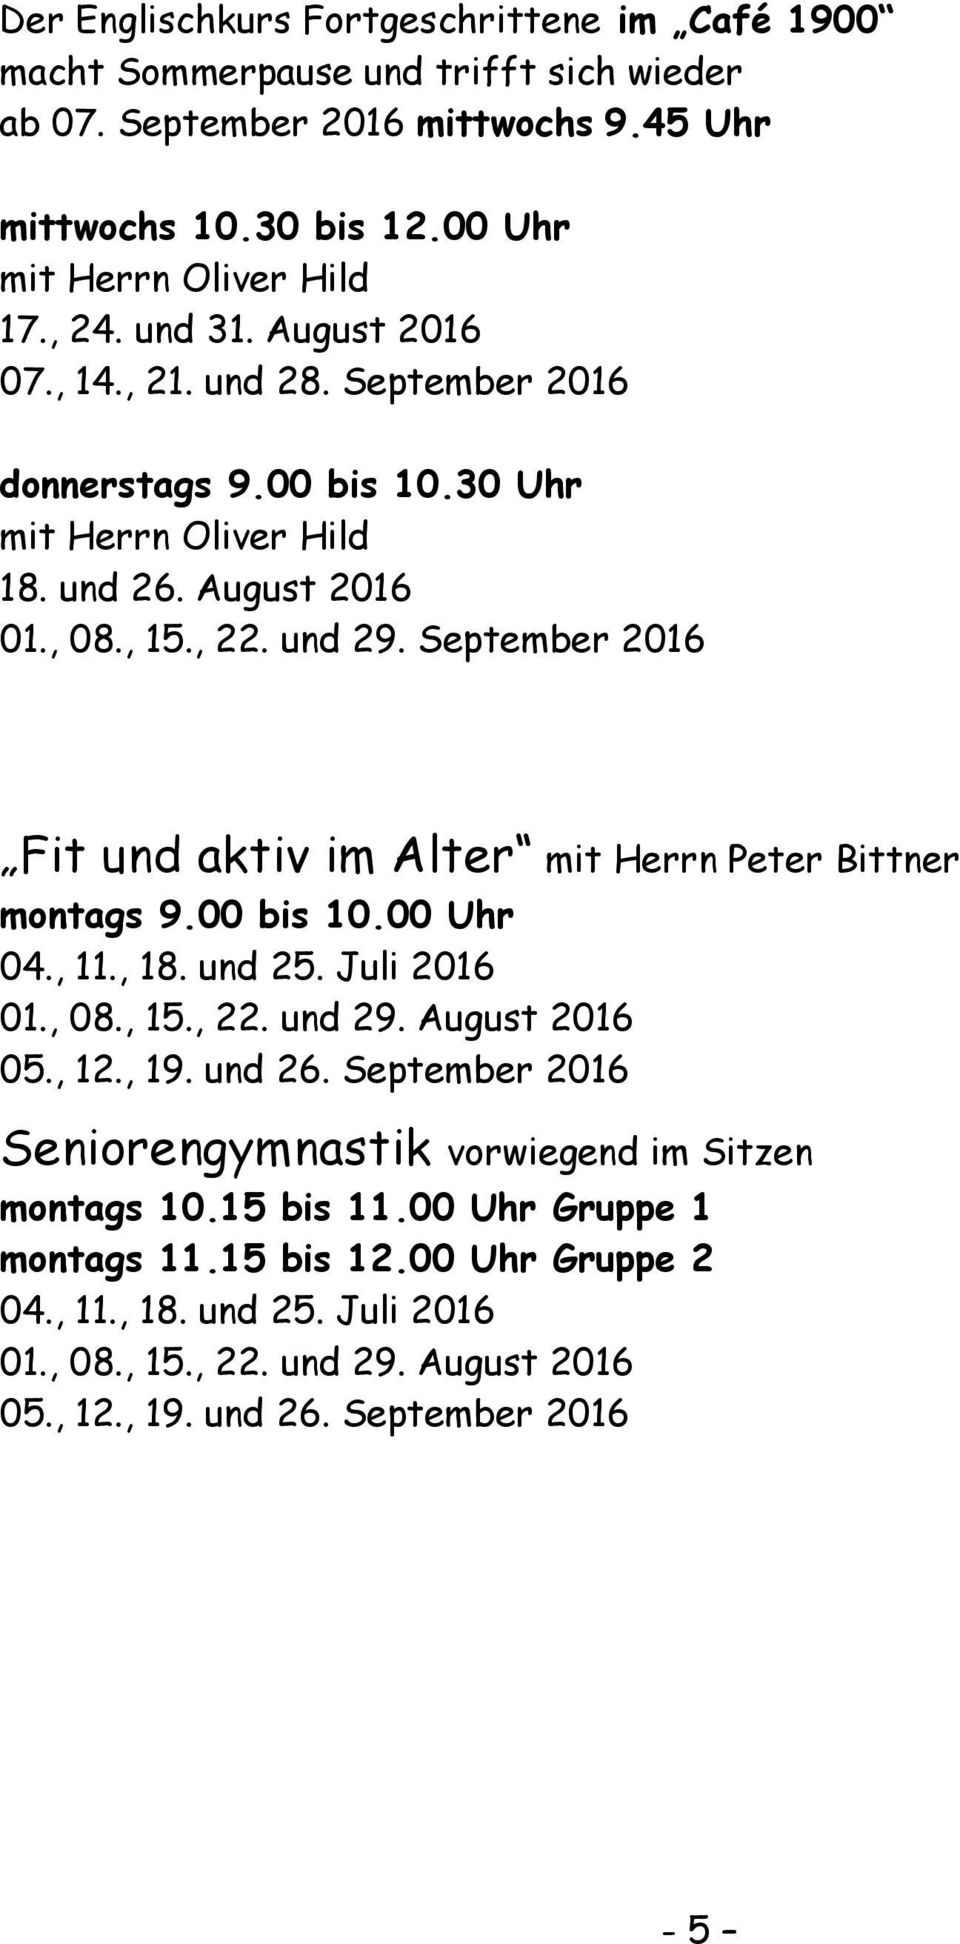 September 2016 Fit und aktiv im Alter mit Herrn Peter Bittner montags 9.00 bis 10.00 Uhr 04., 11., 18. und 25. Juli 2016 01., 08., 15., 22. und 29. August 2016 05., 12., 19. und 26.